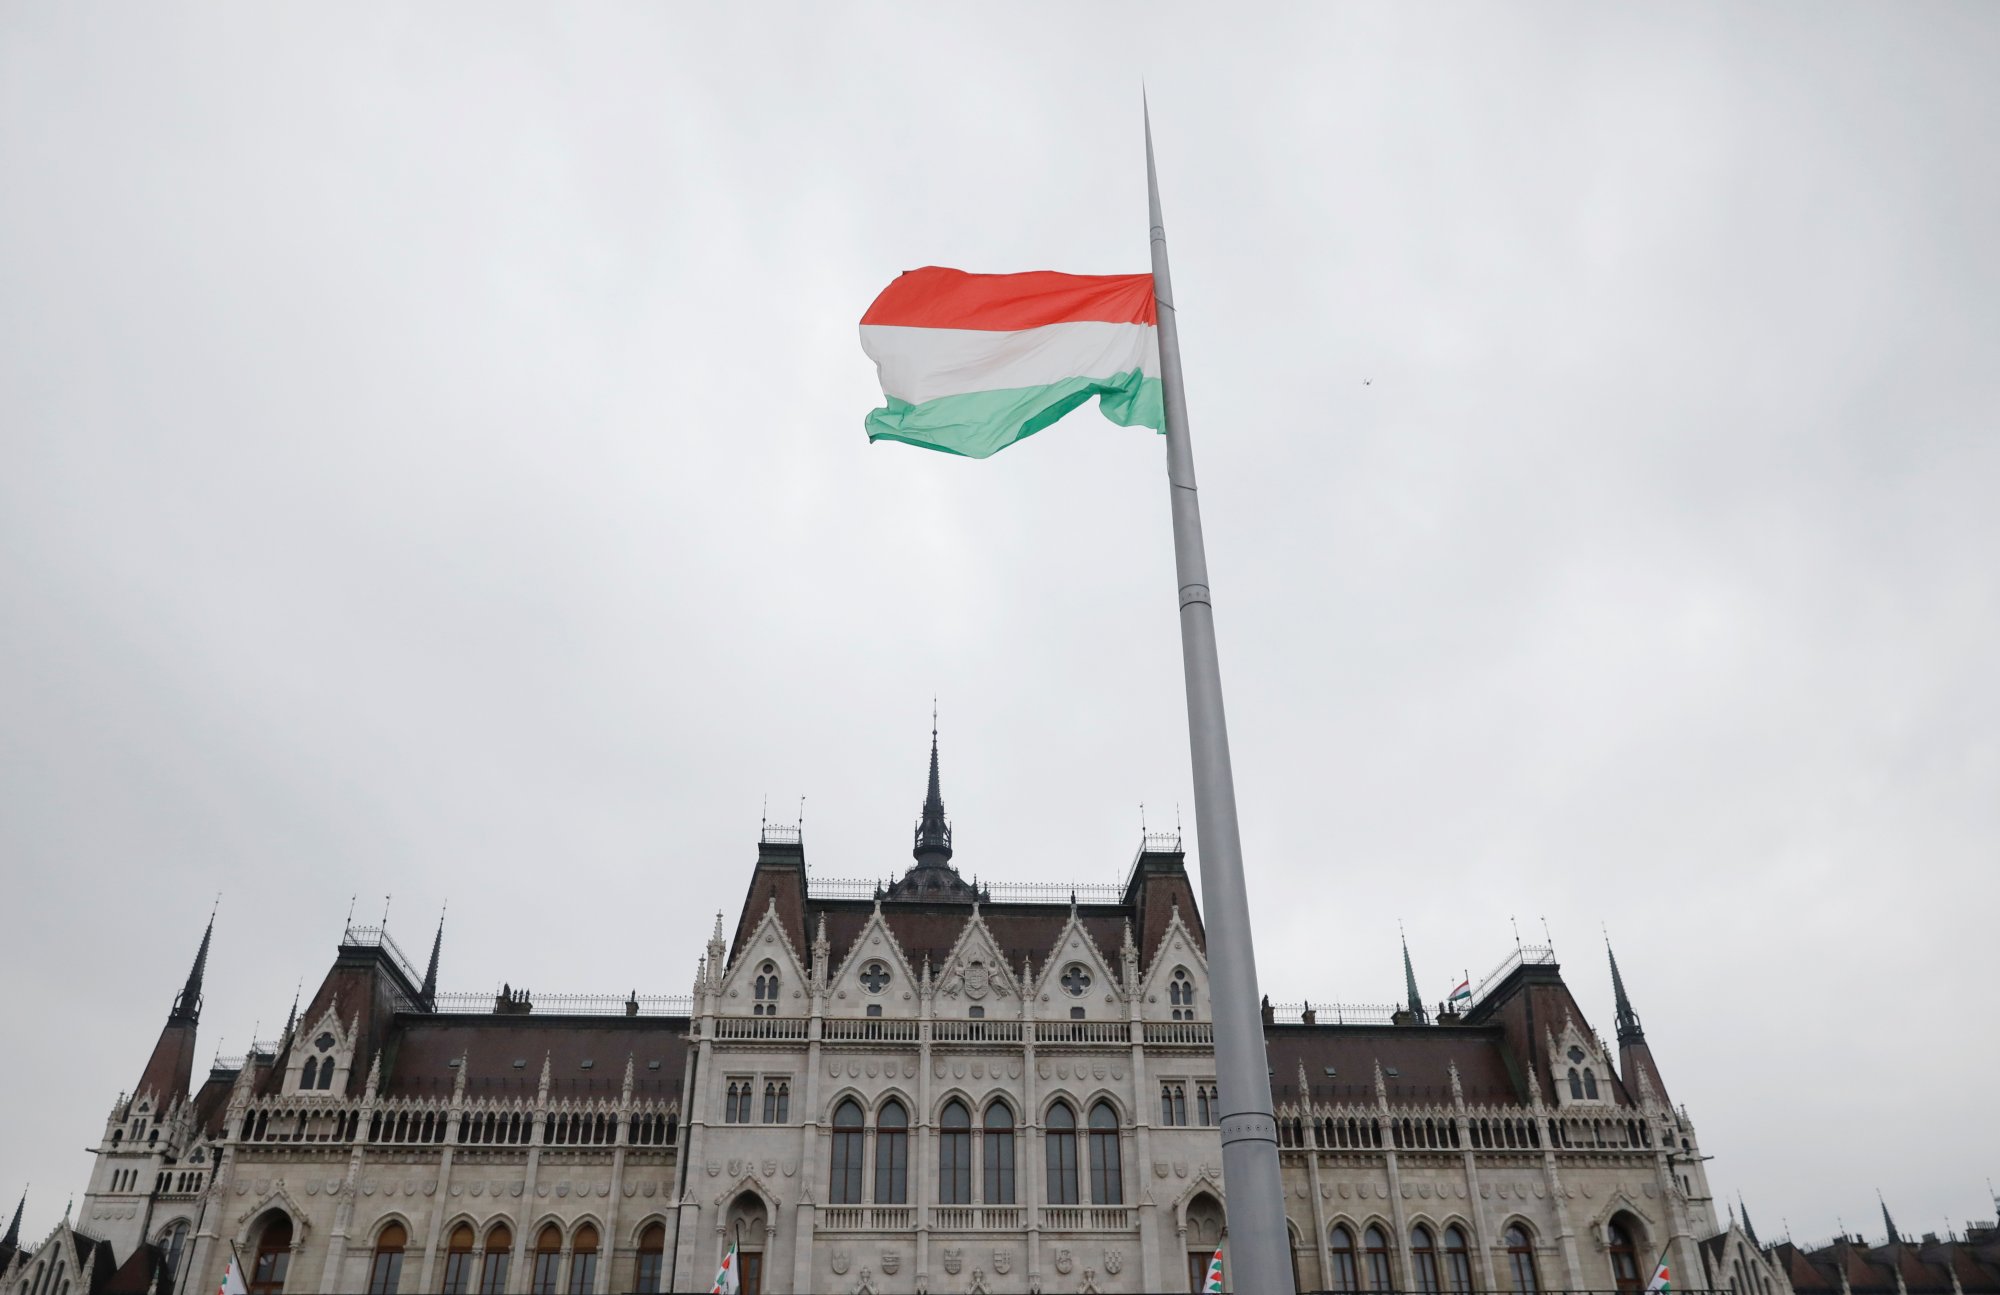 Σφοδρή κριτική των ΗΠΑ στην Ουγγαρία - «Ο νόμος περί εθνικής κυριαρχίας είναι ασύμβατος με τις αξίες μας»